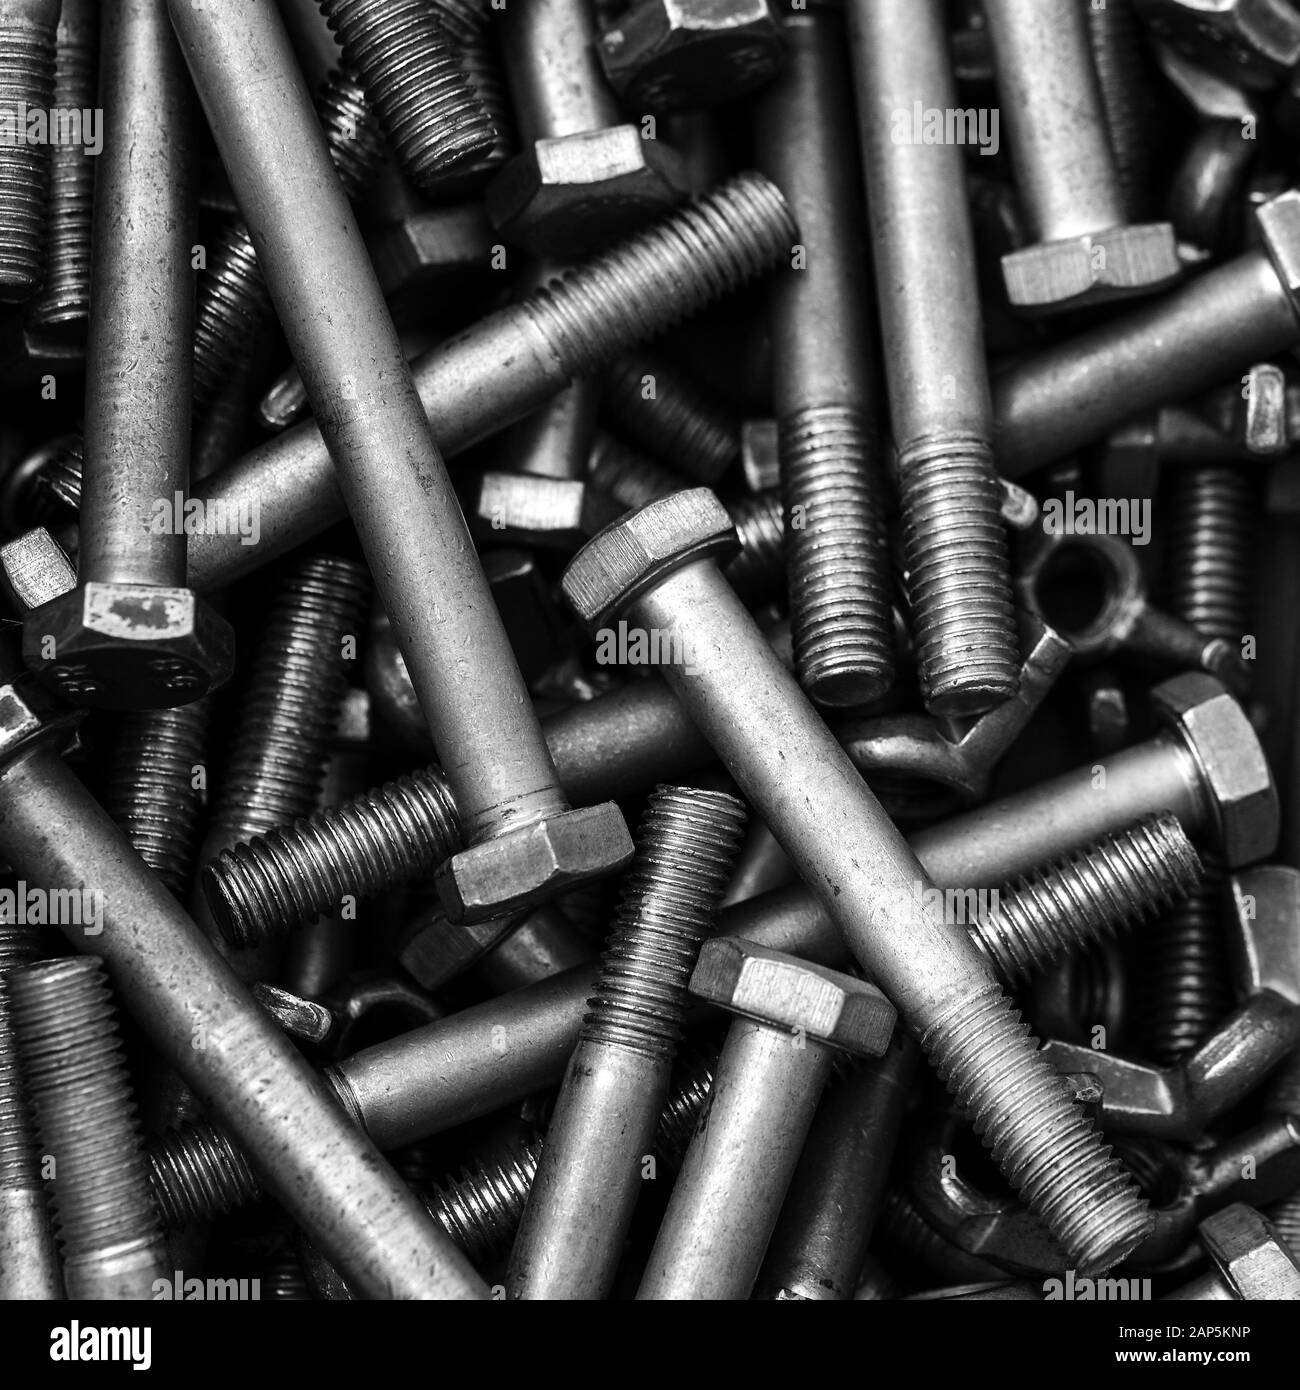 Schrauben aus Stahl sind. Längliche zylindrische Produkte zur Befestigung der verschiedenen Strukturen und den Einsatz in Maschinenbau, Automobilindustrie Stockfoto